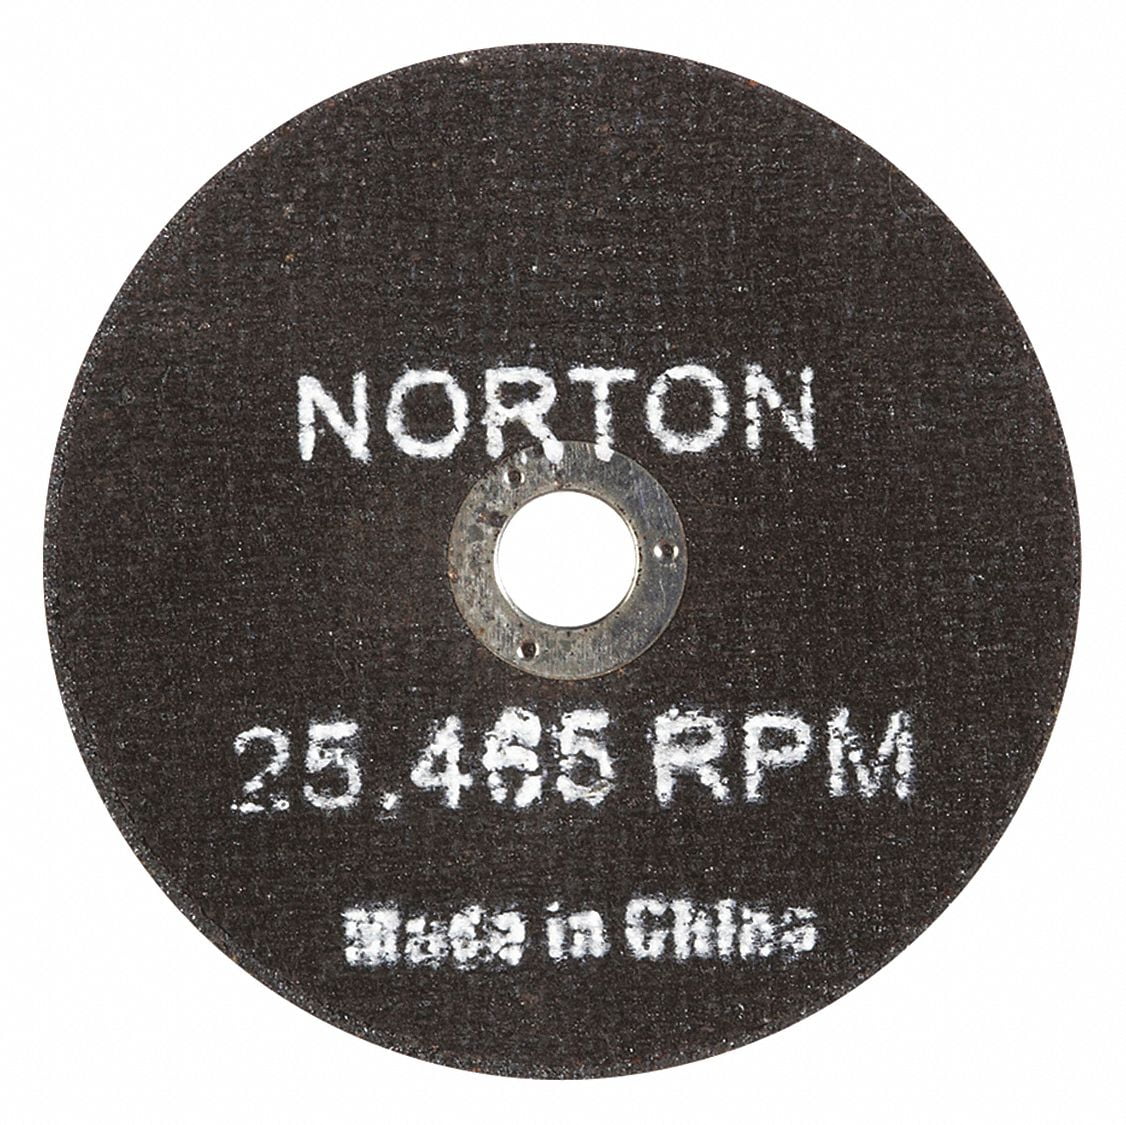 10 pc Cut off 4" 1/16x3/8 hole Cutoff Wheels qty 10 Norton Gemini